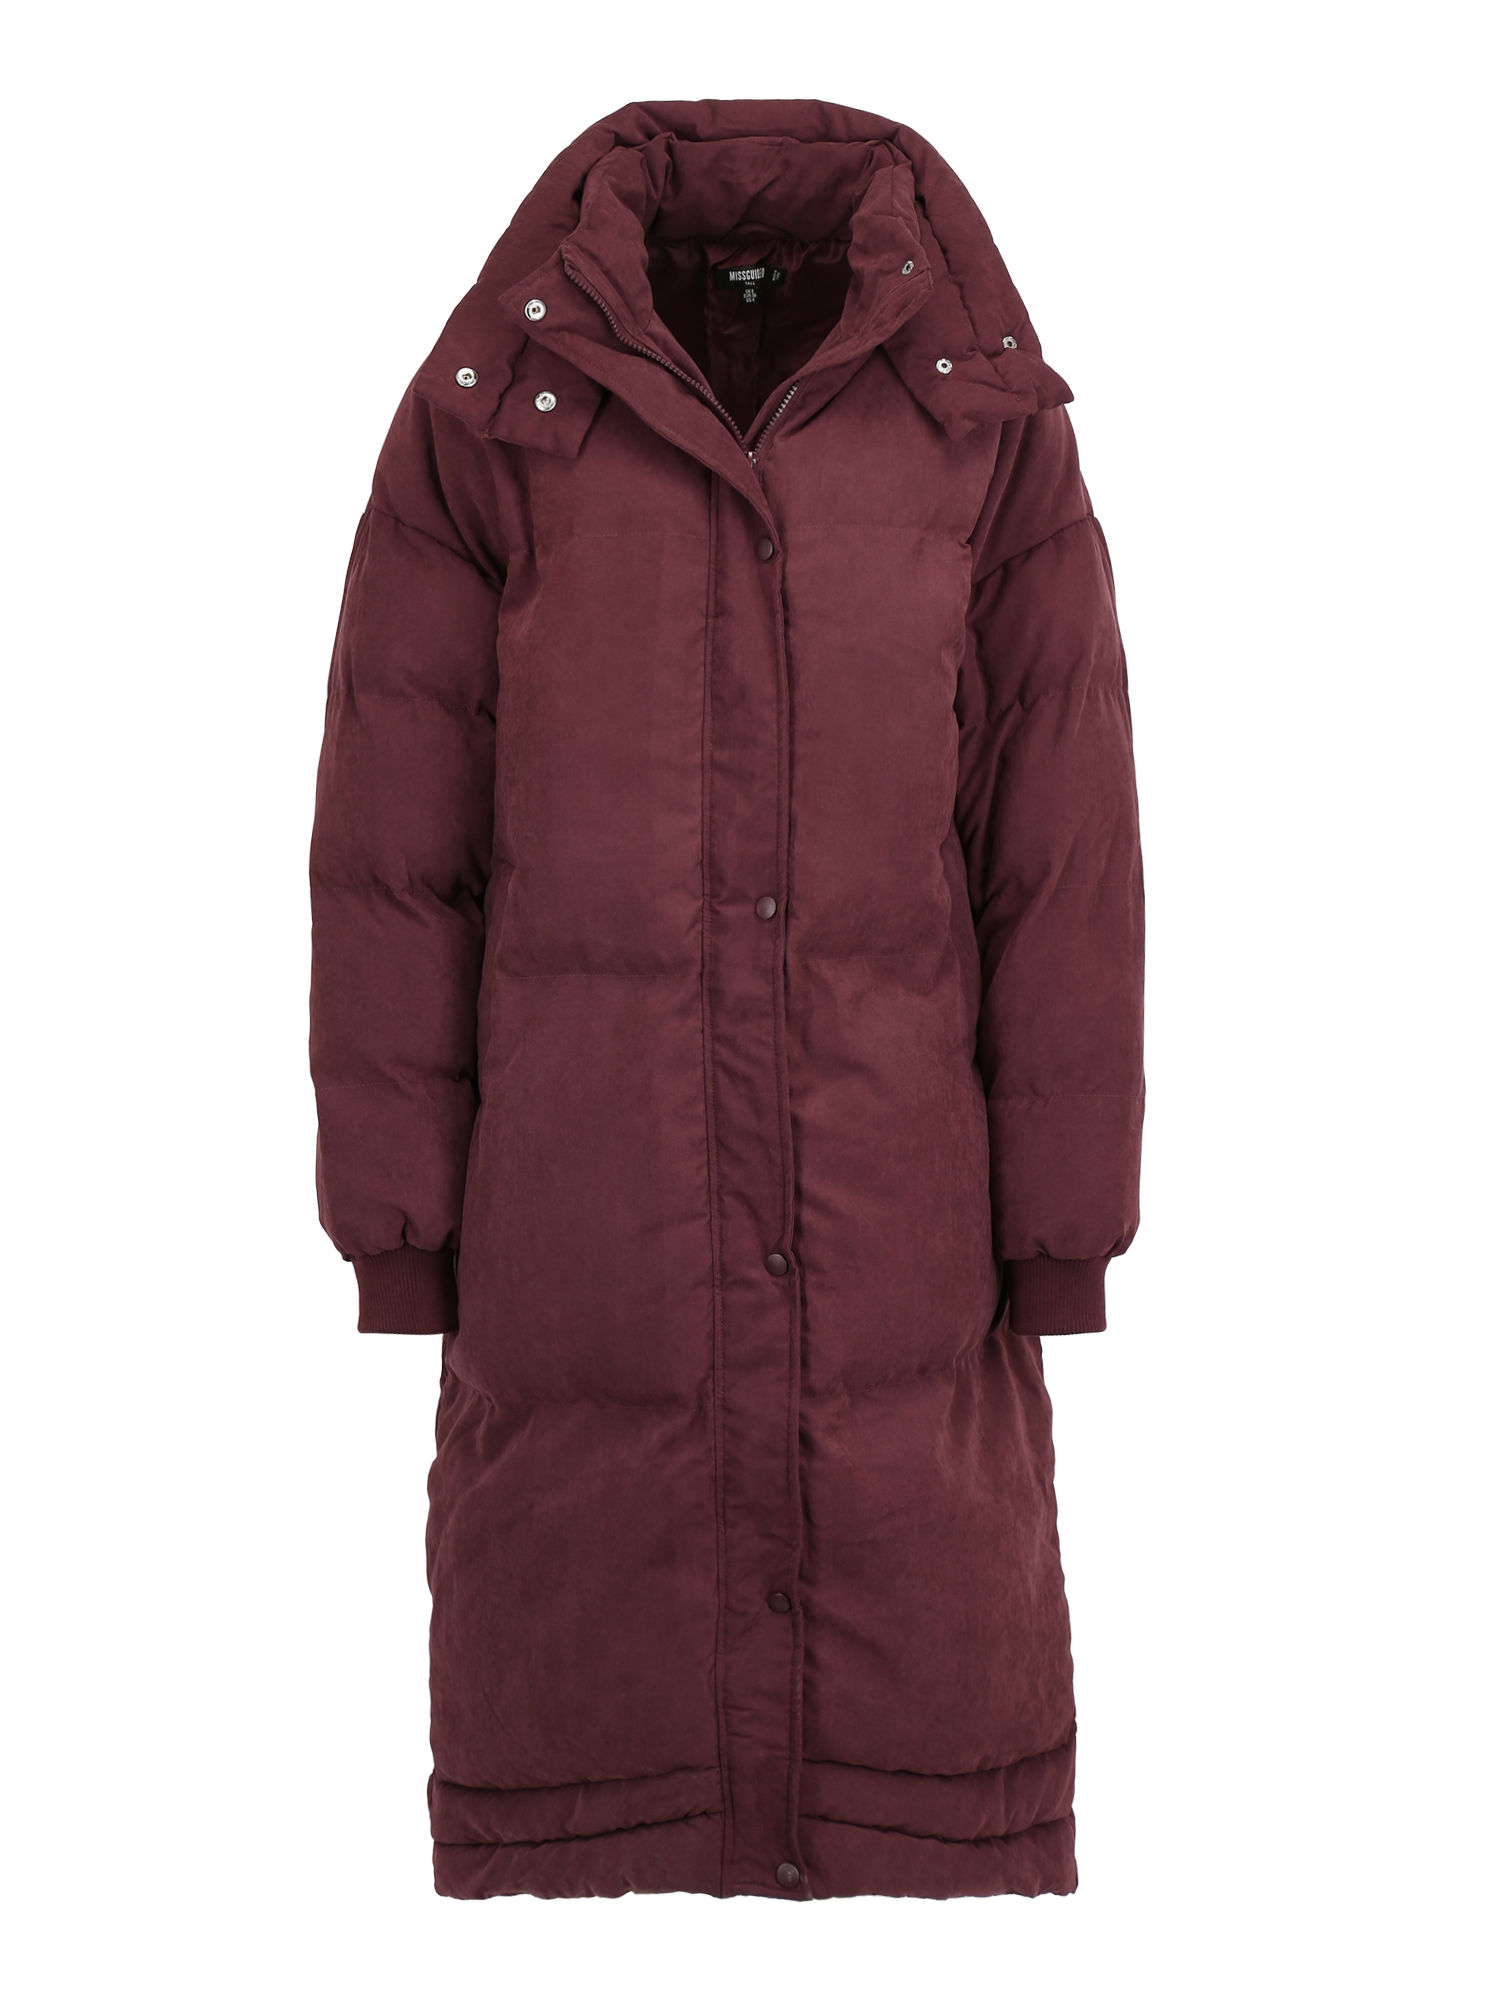 JDiVU Odzież Missguided Tall Płaszcz zimowy w kolorze Bordowym 